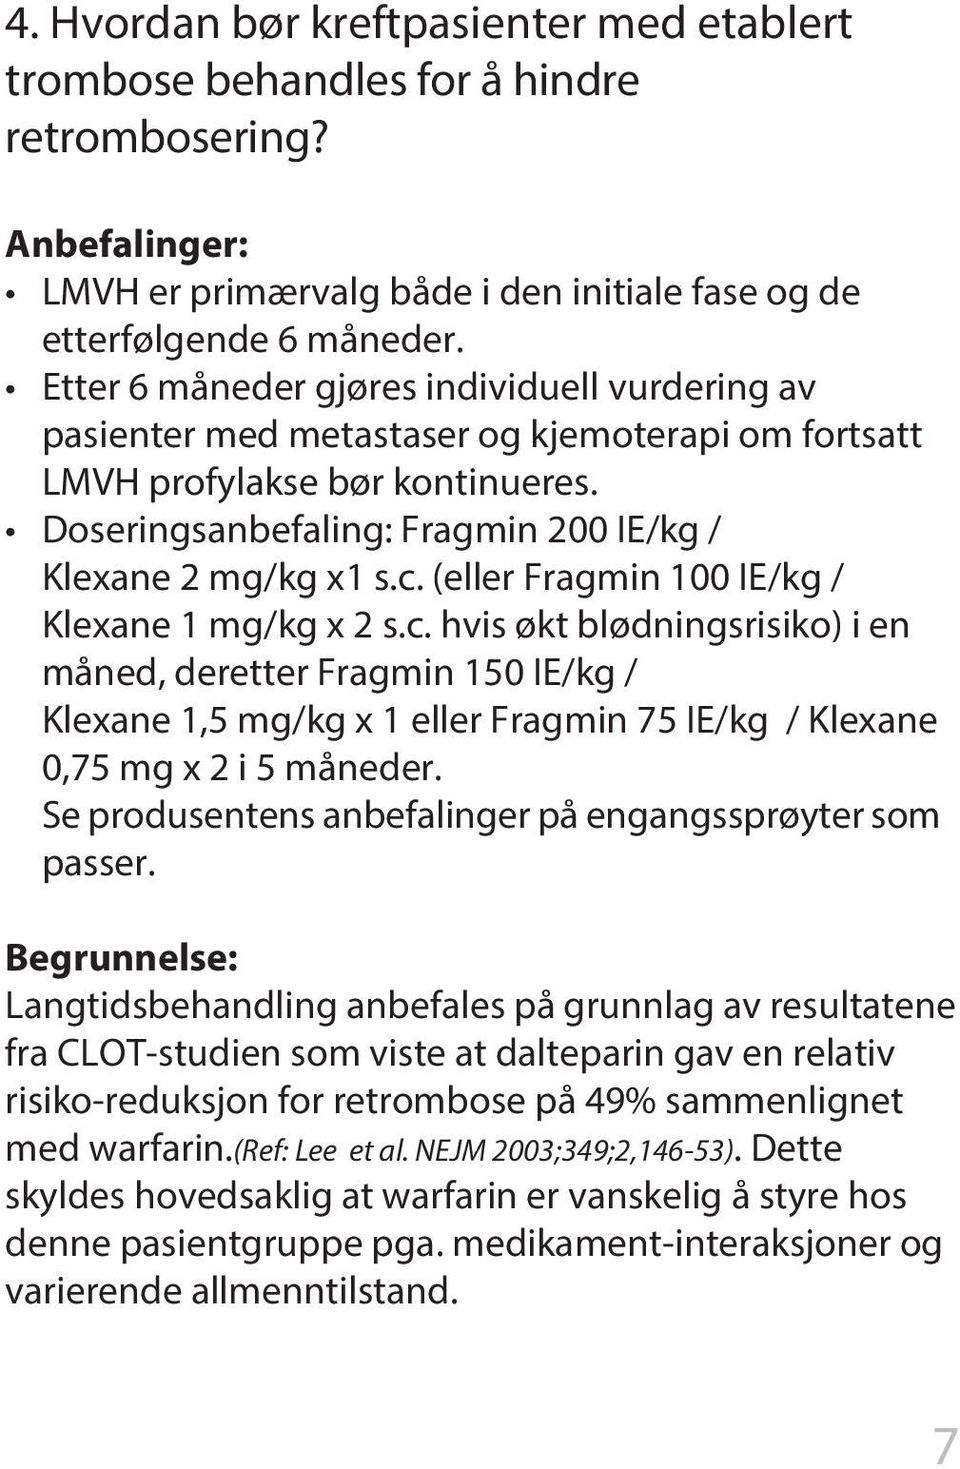 (eller Fragmin 100 IE/kg / Klexane 1 mg/kg x 2 s.c. hvis økt blødningsrisiko) i en måned, deretter Fragmin 150 IE/kg / Klexane 1,5 mg/kg x 1 eller Fragmin 75 IE/kg / Klexane 0,75 mg x 2 i 5 måneder.